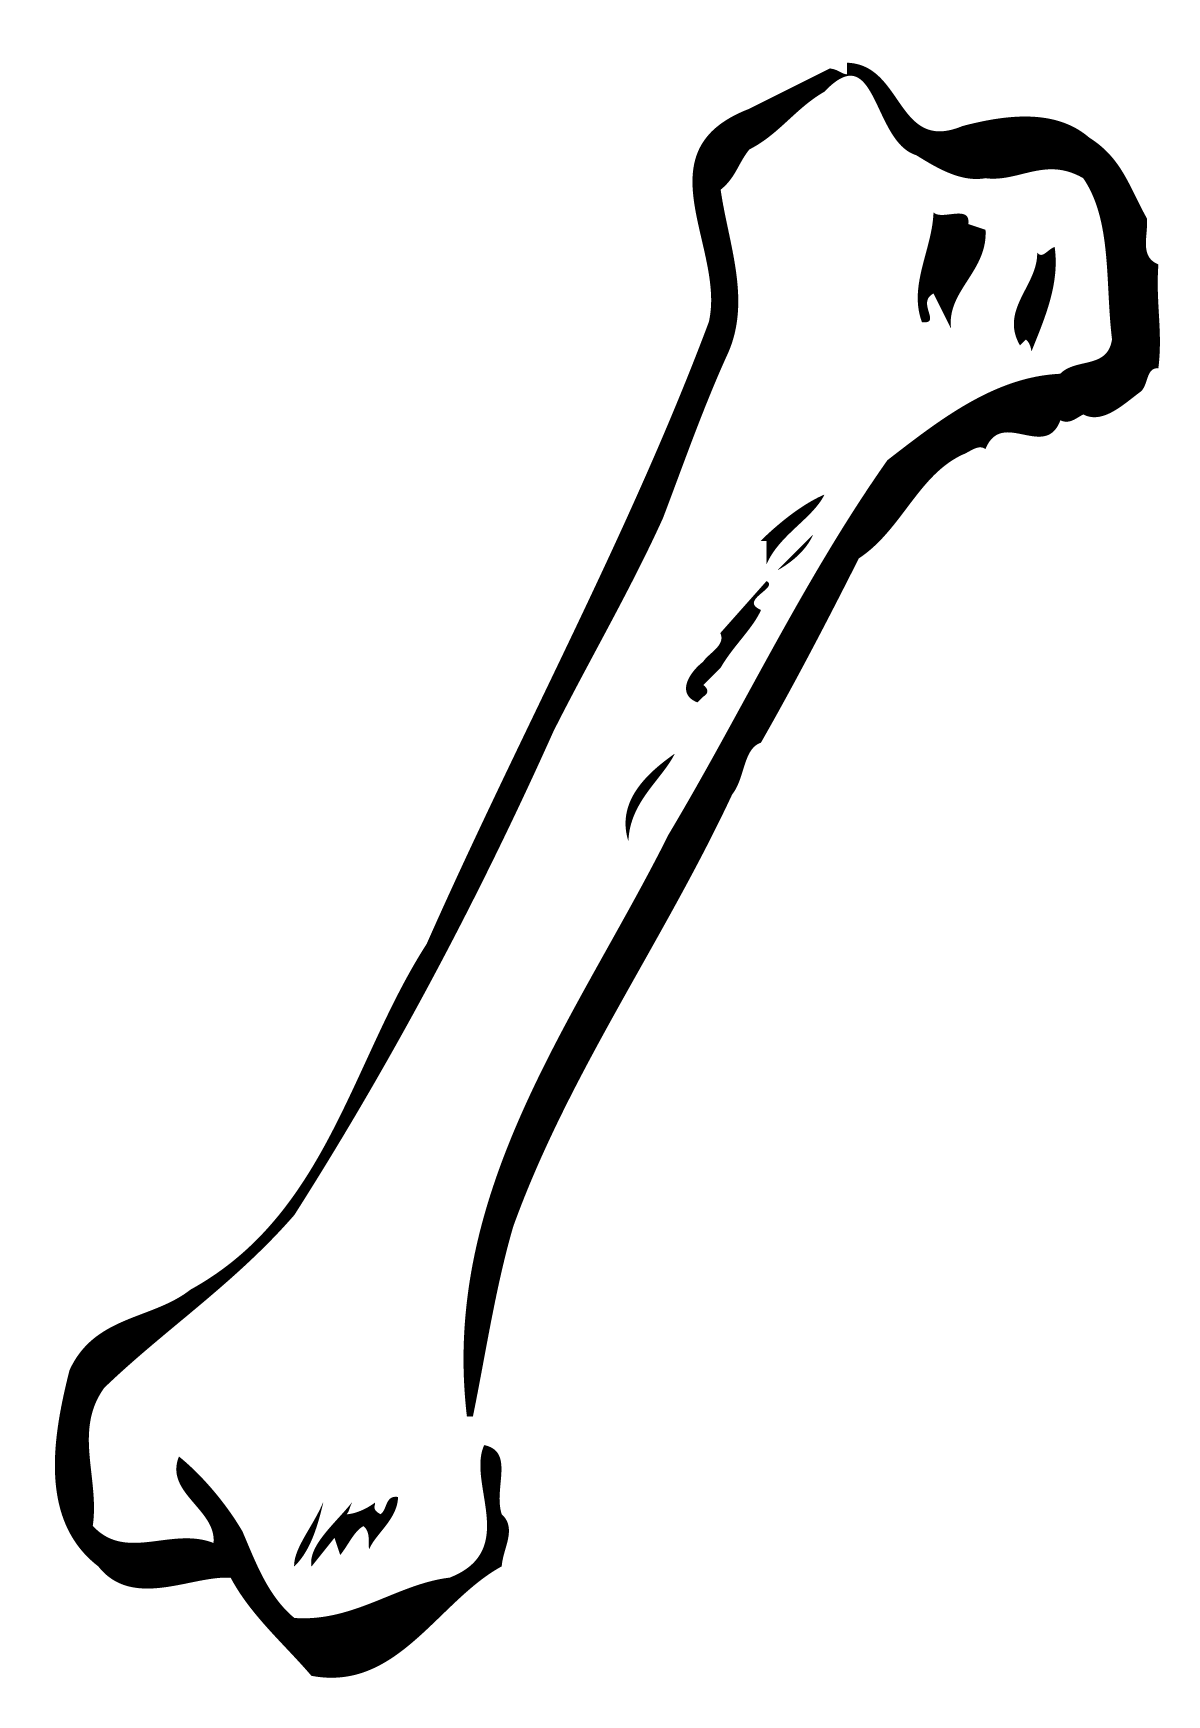 Animated bones clipart